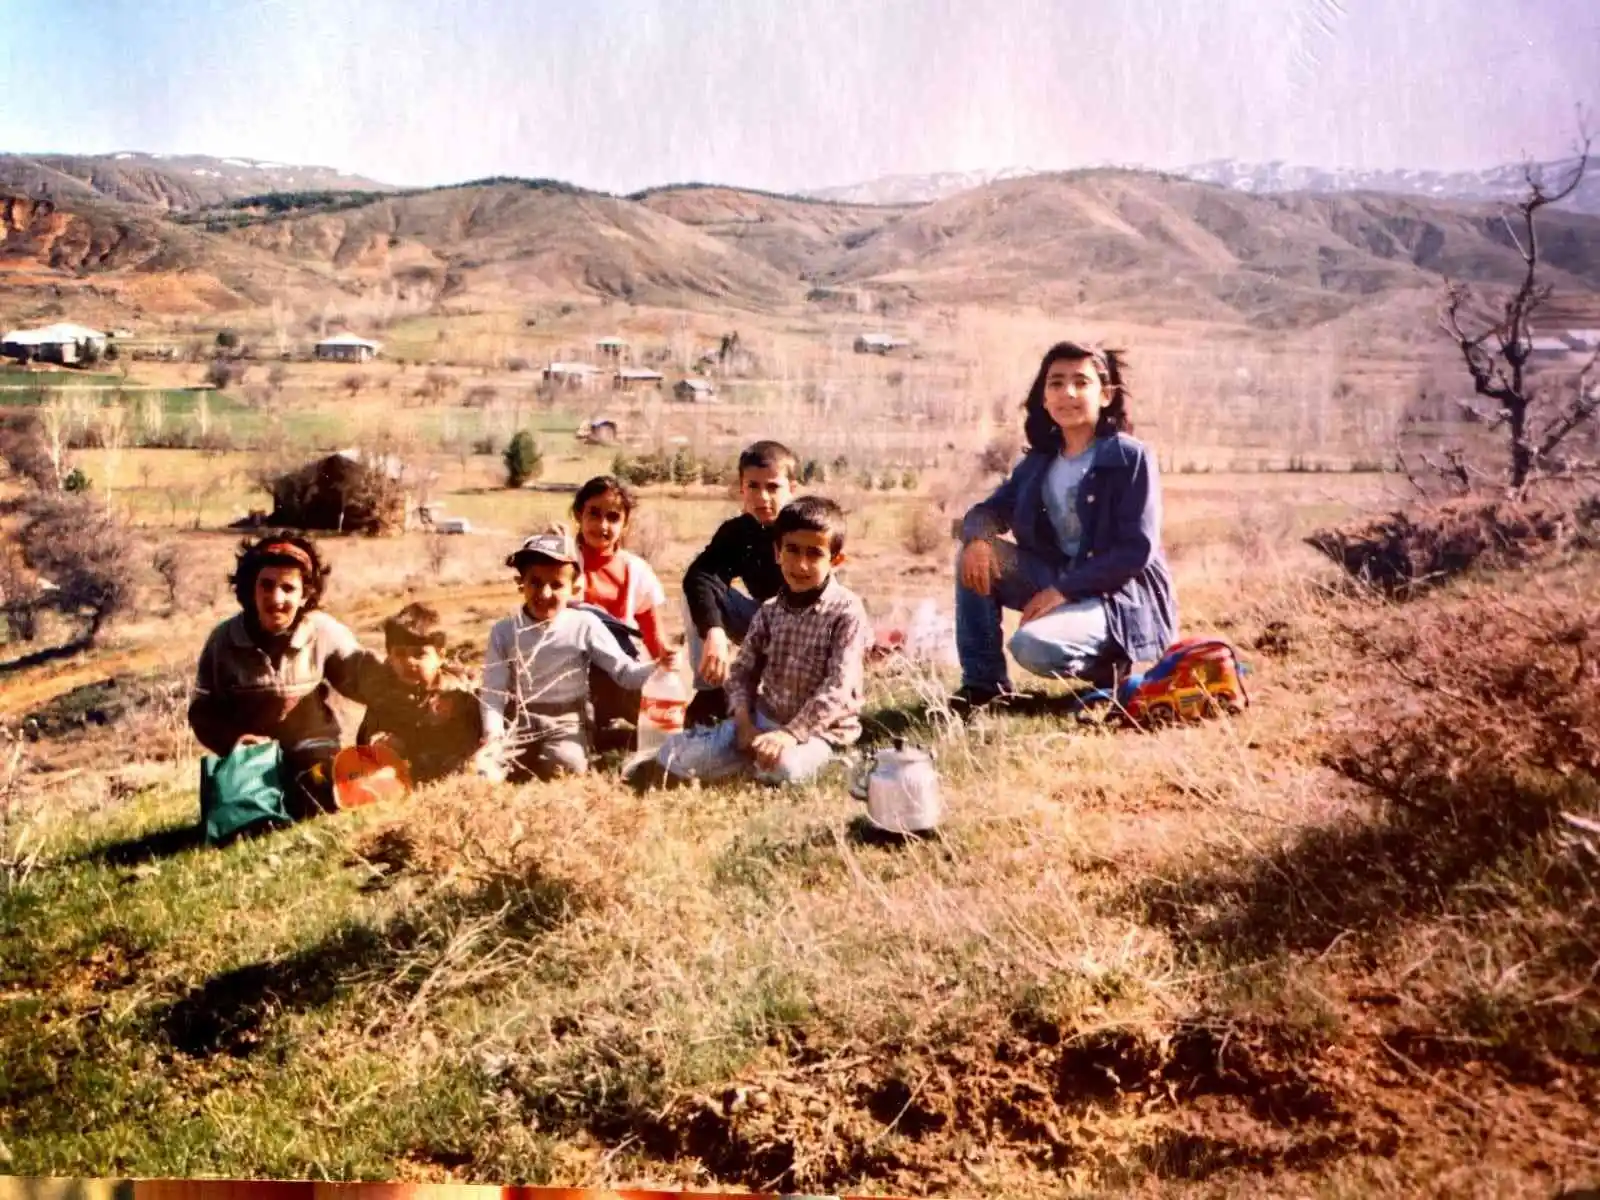 Yer aynı, arkadaşlar aynı, tarih farklı: Elazığ’da 7 çocukluk arkadaşı, 18 yıl sonra aynı yerde buluşup ayını fotoğrafı çektirdi
